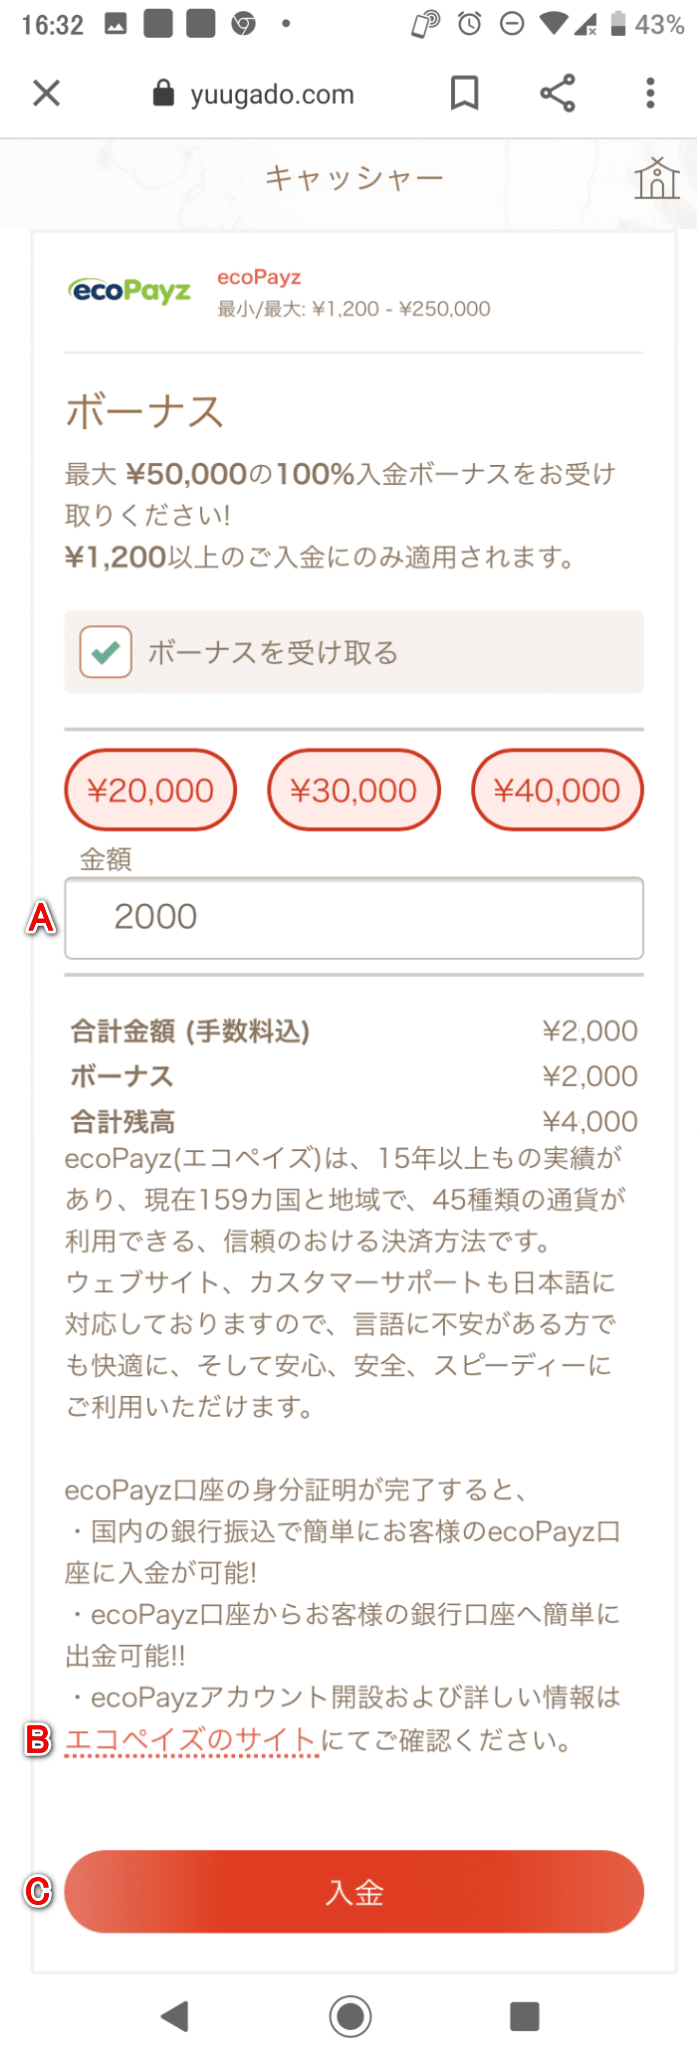 遊雅堂（yuugado）スマートフォンでのecoPayzによる入金イメージ